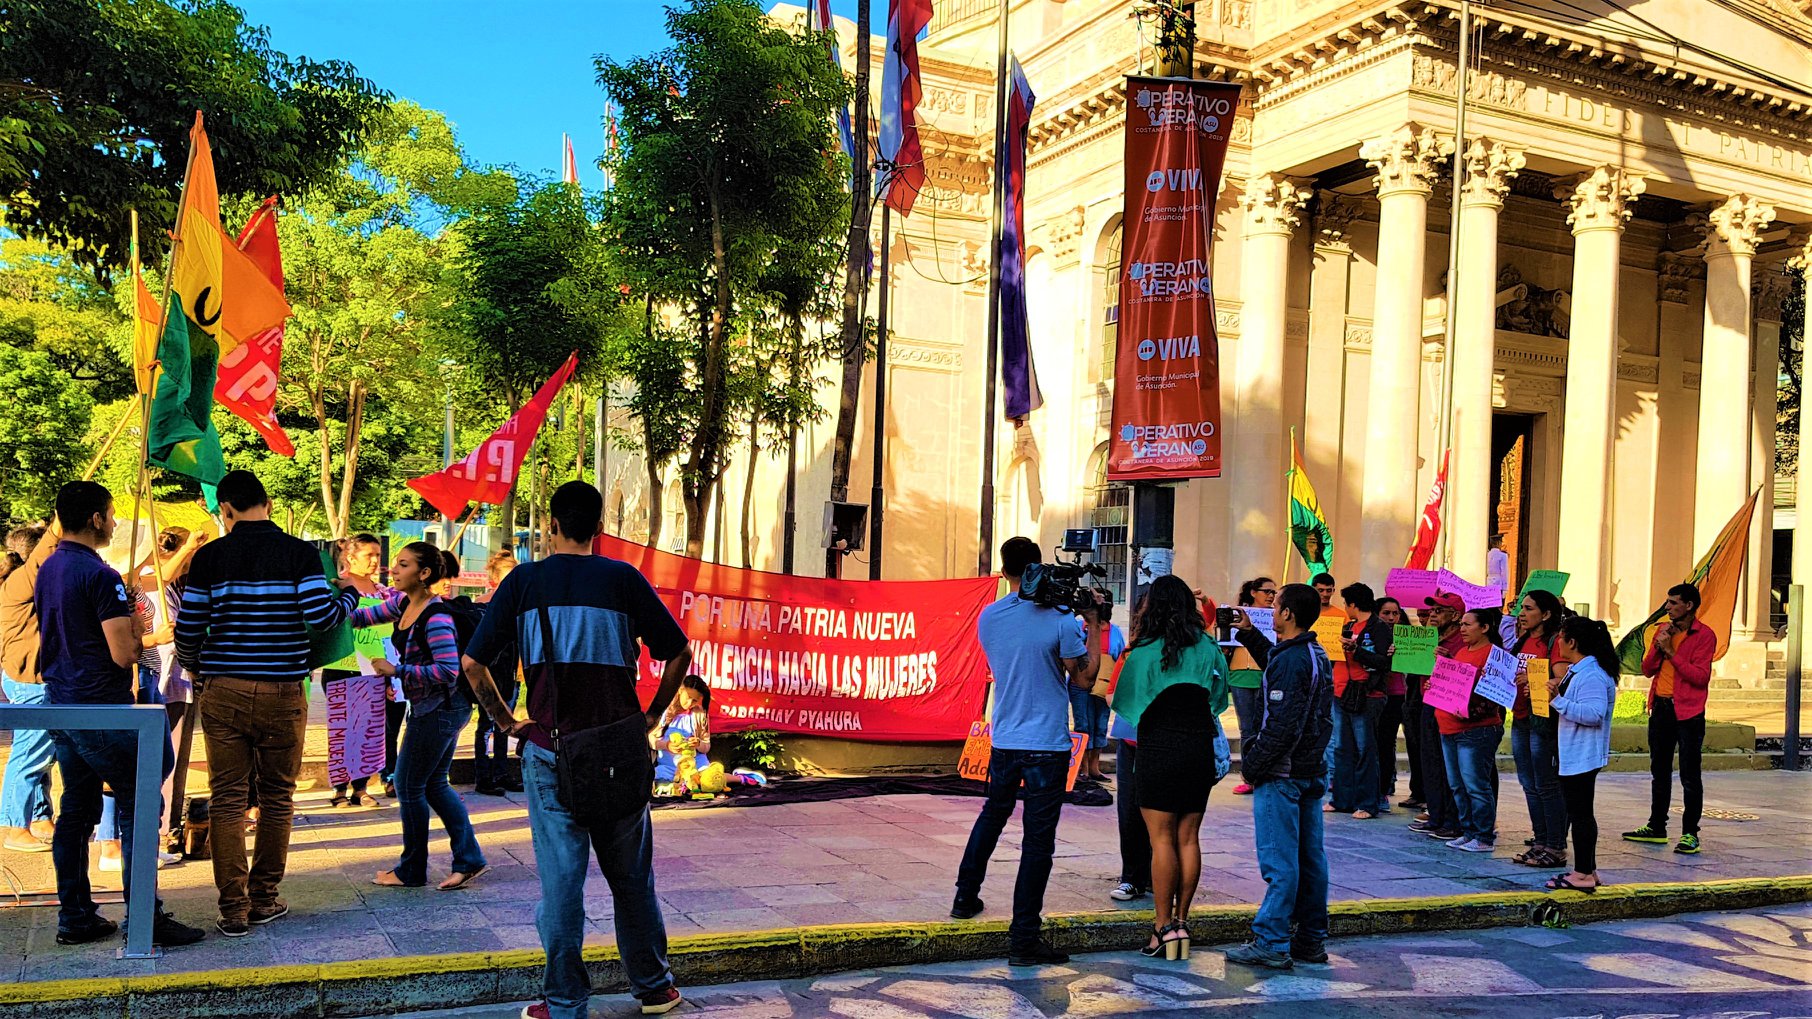 Paraguay Pyahurã se moviliza contra militares en calles: “Trae muchos recuerdos de lo que hacía Stroessner”